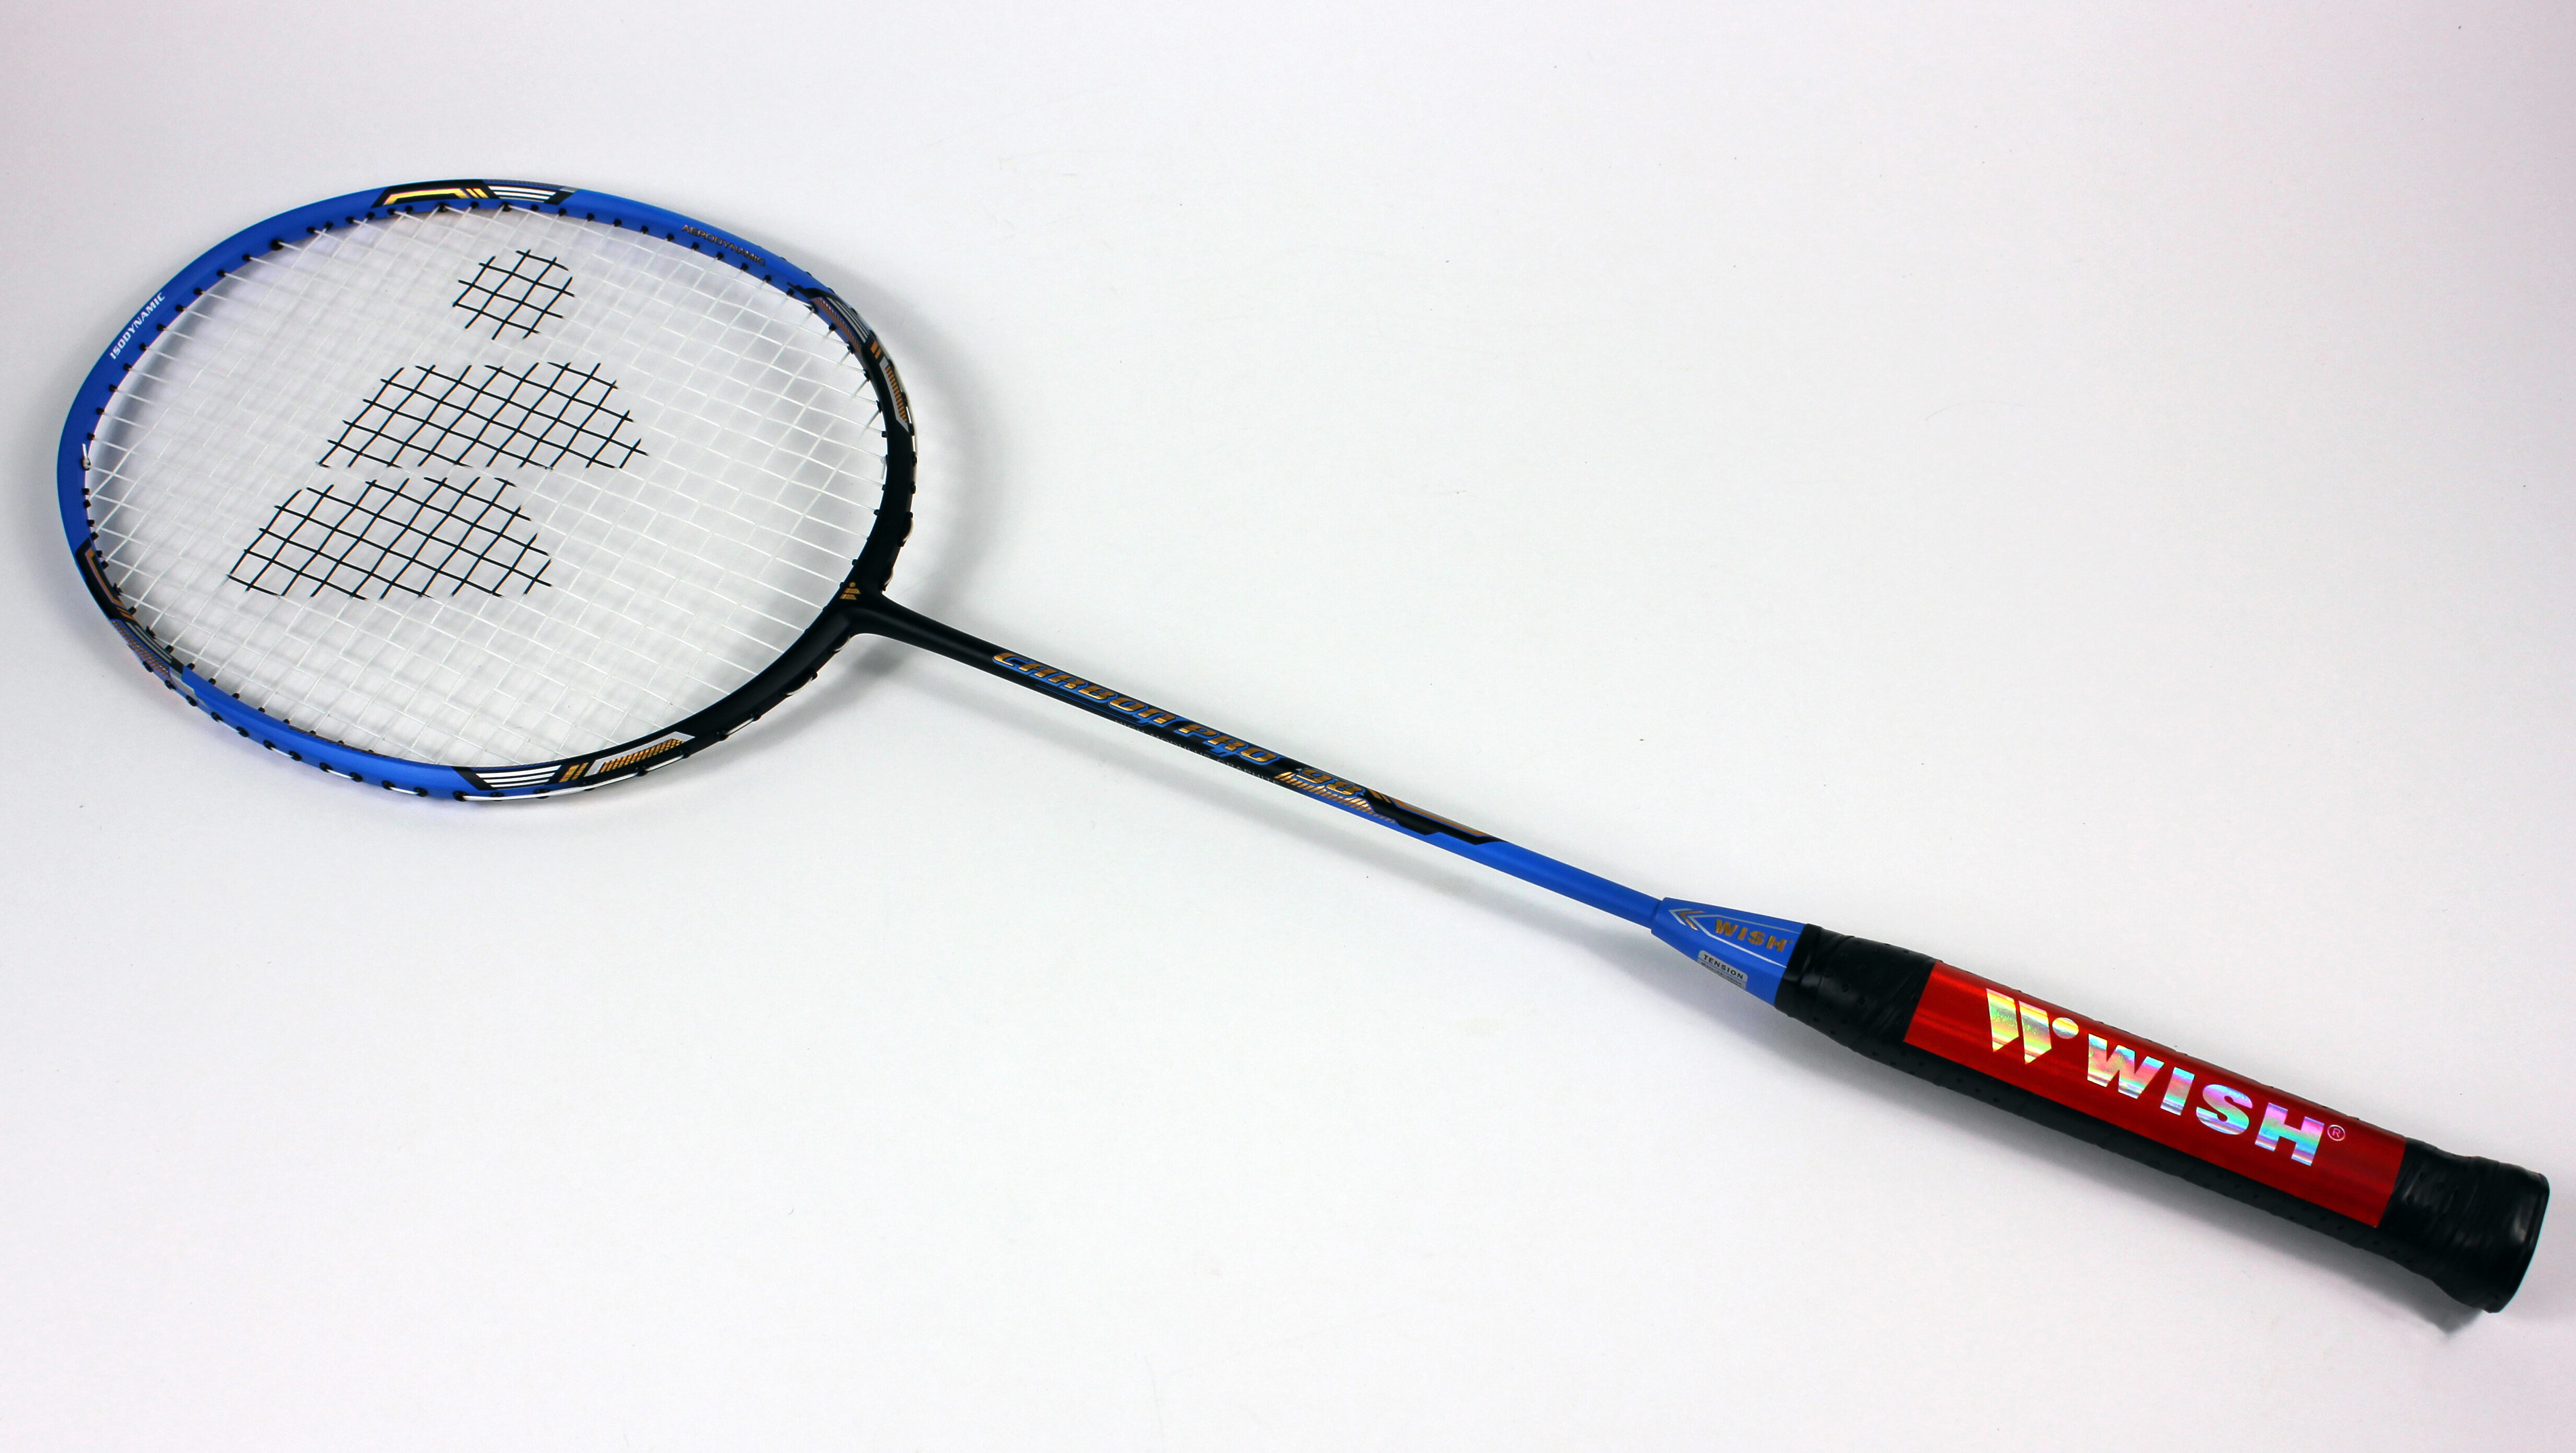 kuaike badminton racket price